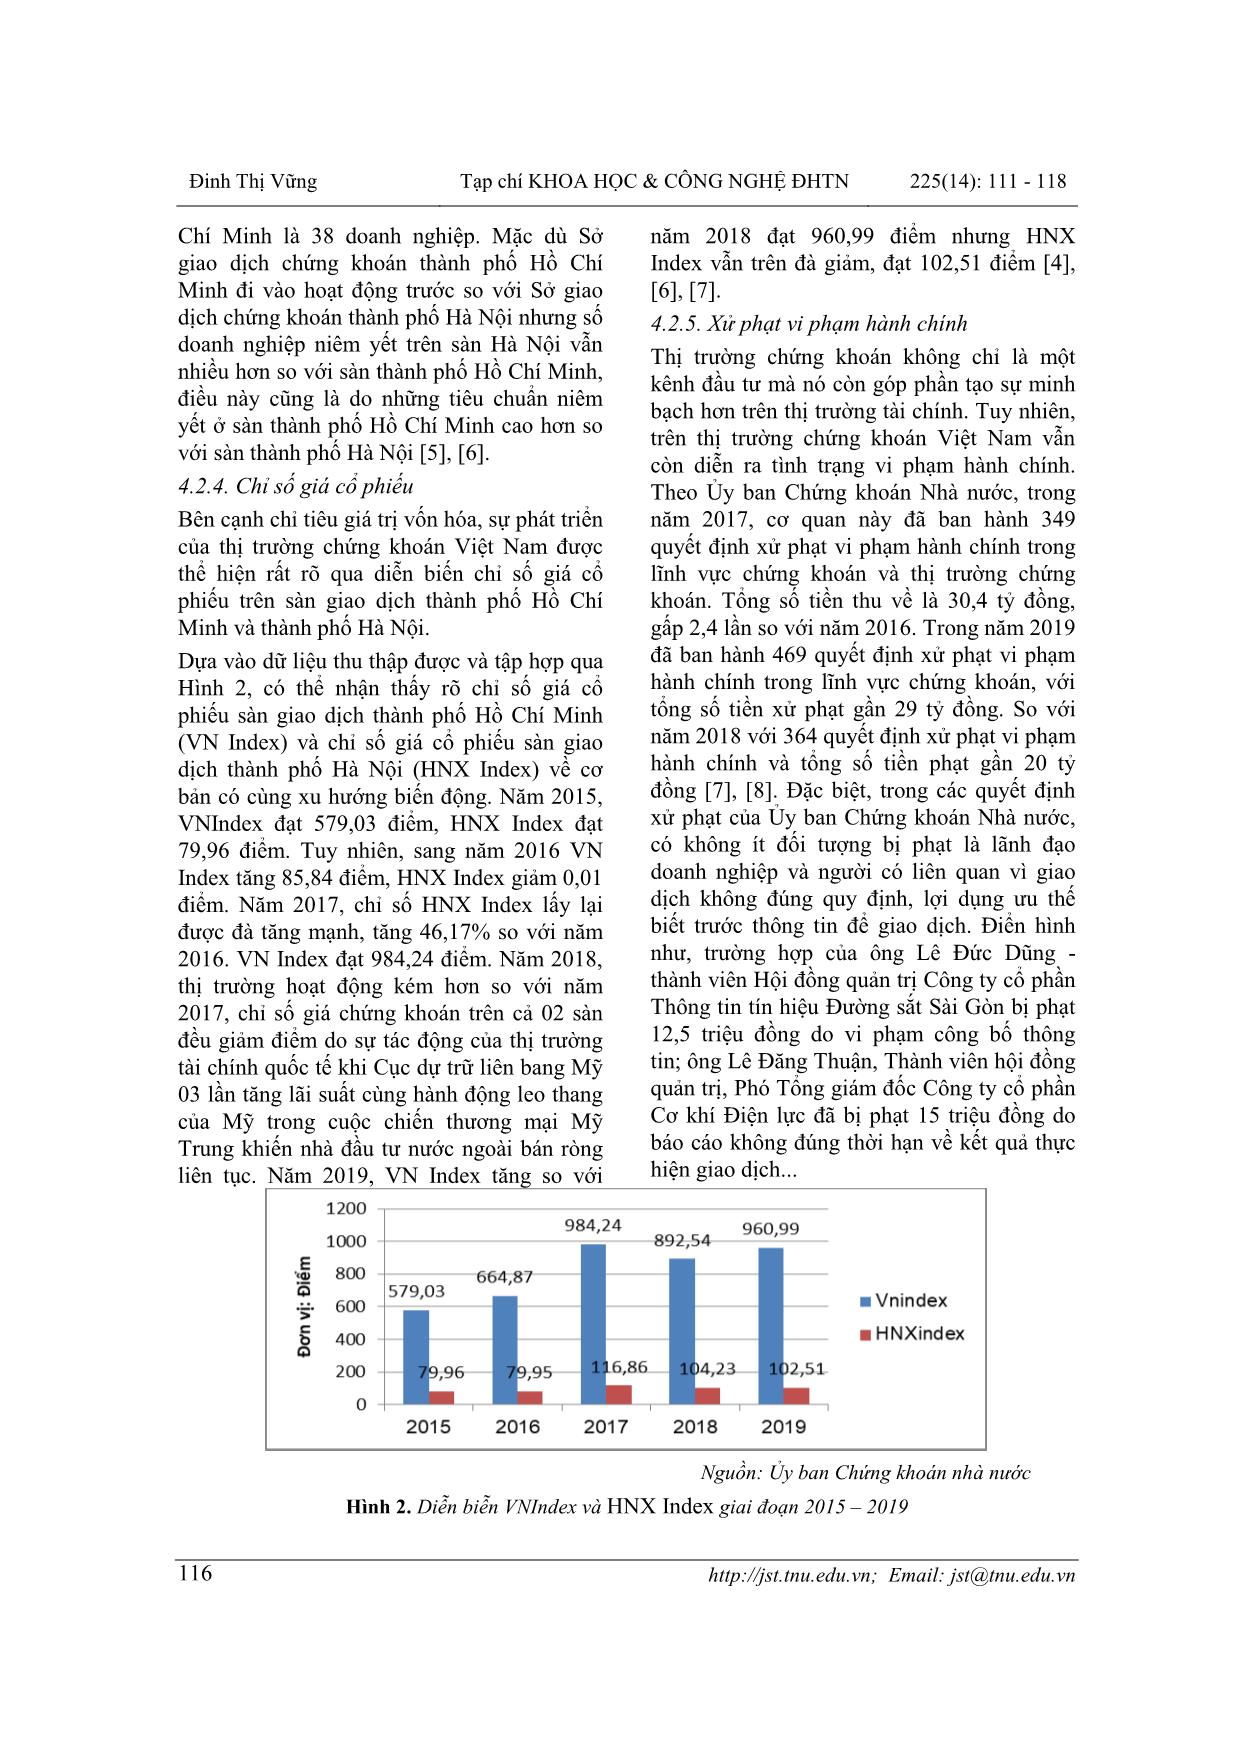 Phân tích hoạt động của thị trường chứng khoán Việt Nam những năm gần đây trang 6